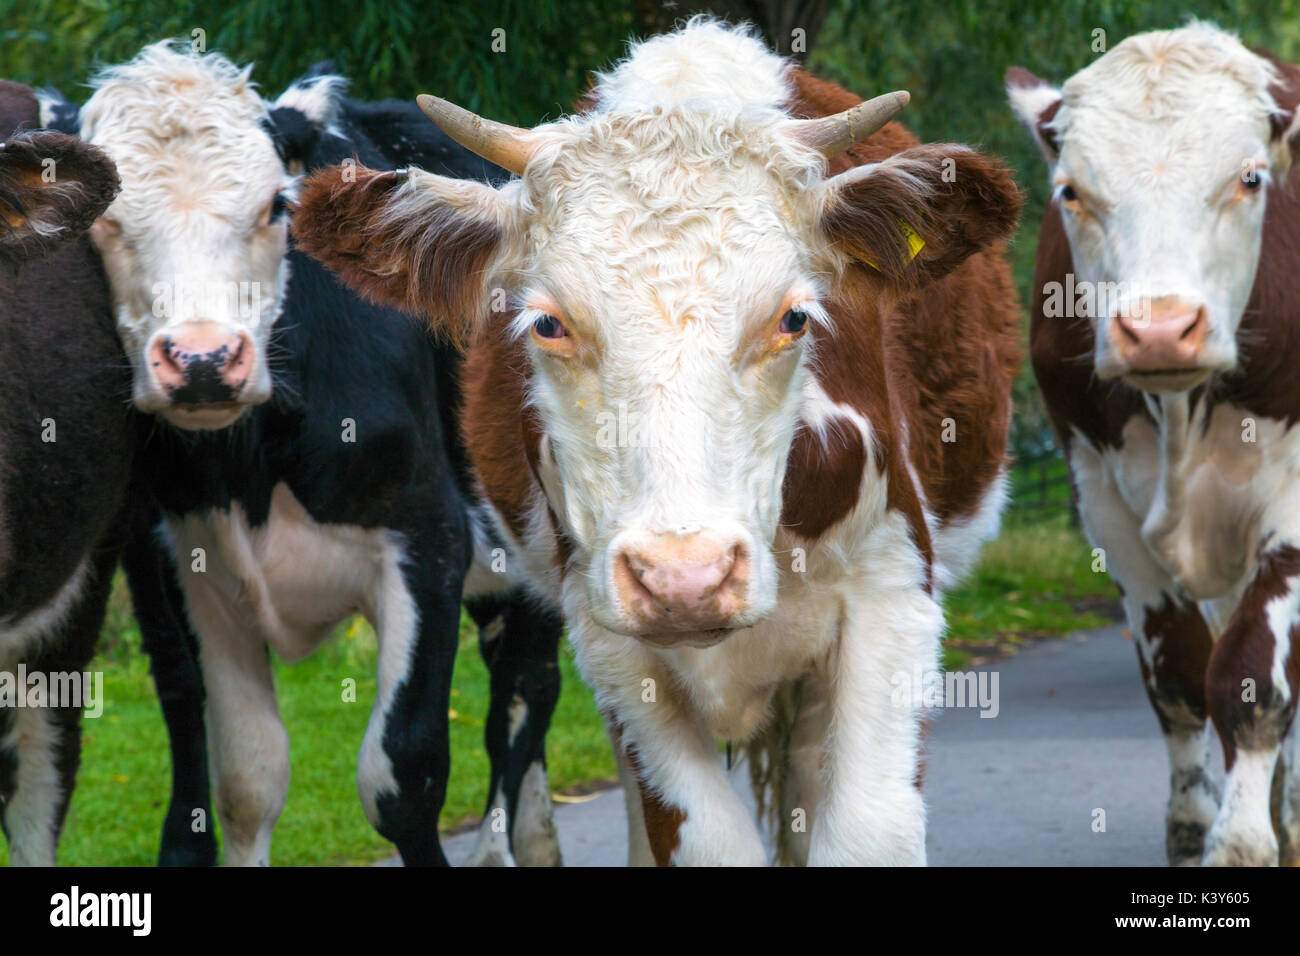 Un close-up di una mandria di mucche cercando nella fotocamera, cambridge, Regno Unito Foto Stock